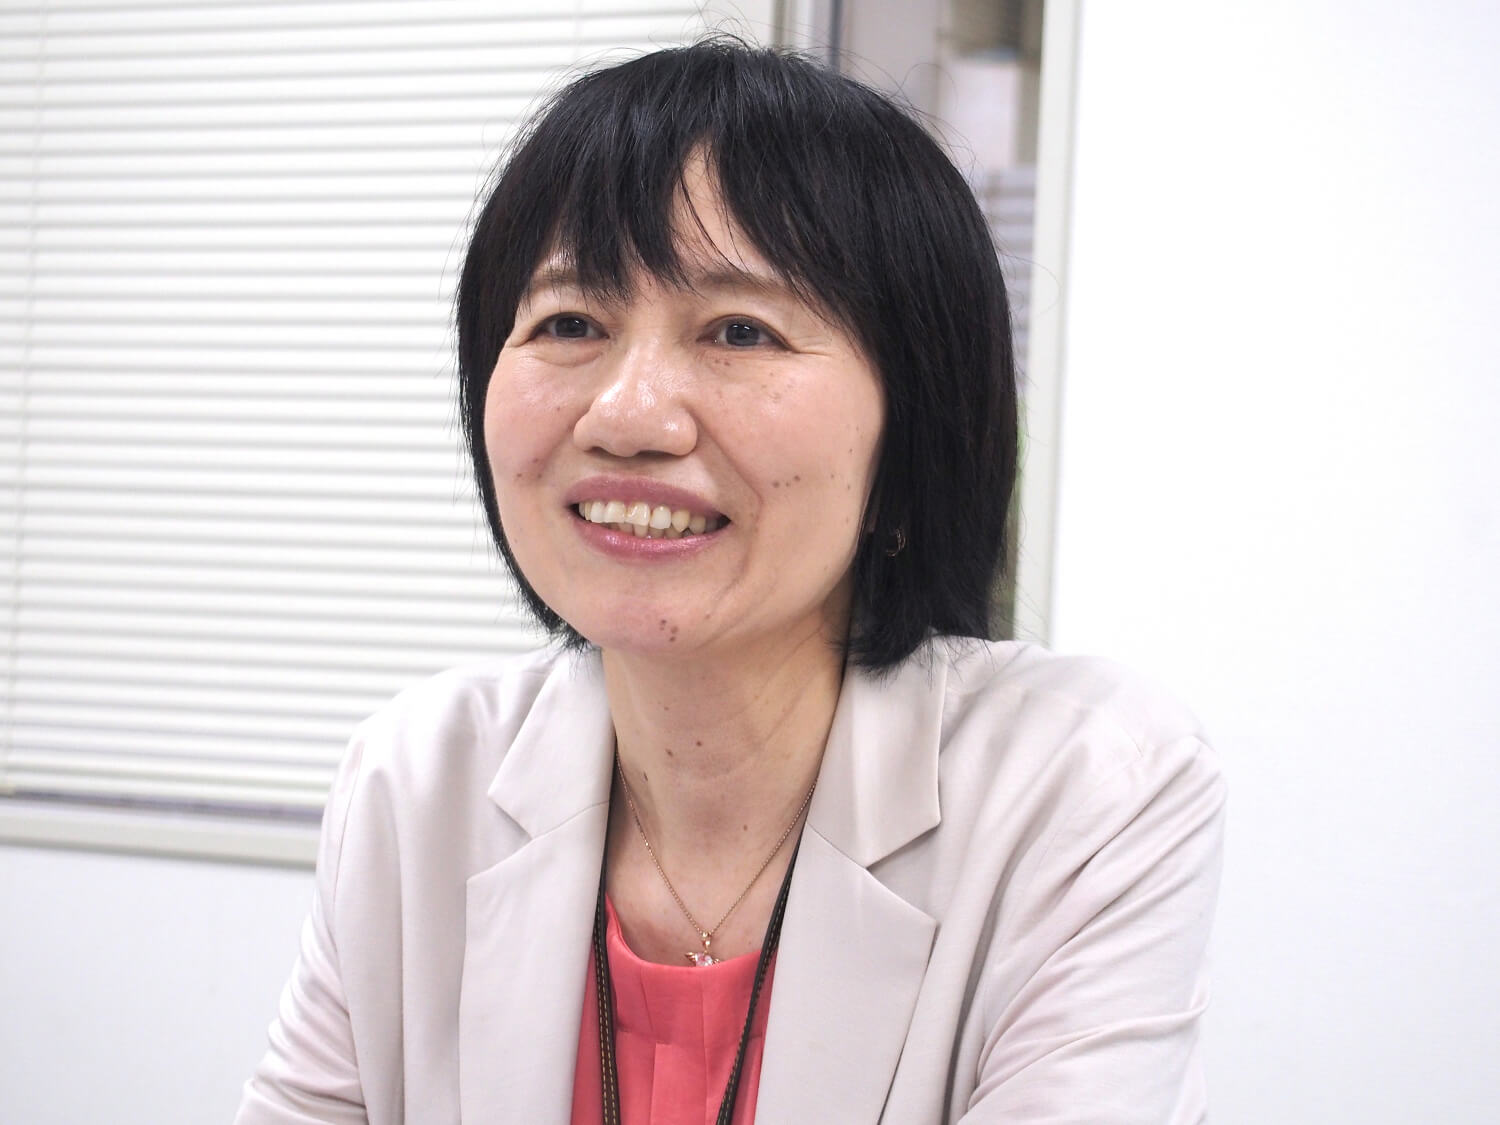 お話を伺った事業推進部課長・庄司京美さん。商社の営業から介護業界に転職し、様々な事業所の立ち上げを担当。2004年、東京海上日動ベターライフサービスに転職し、2012年からは採用推進責任者として活躍中。